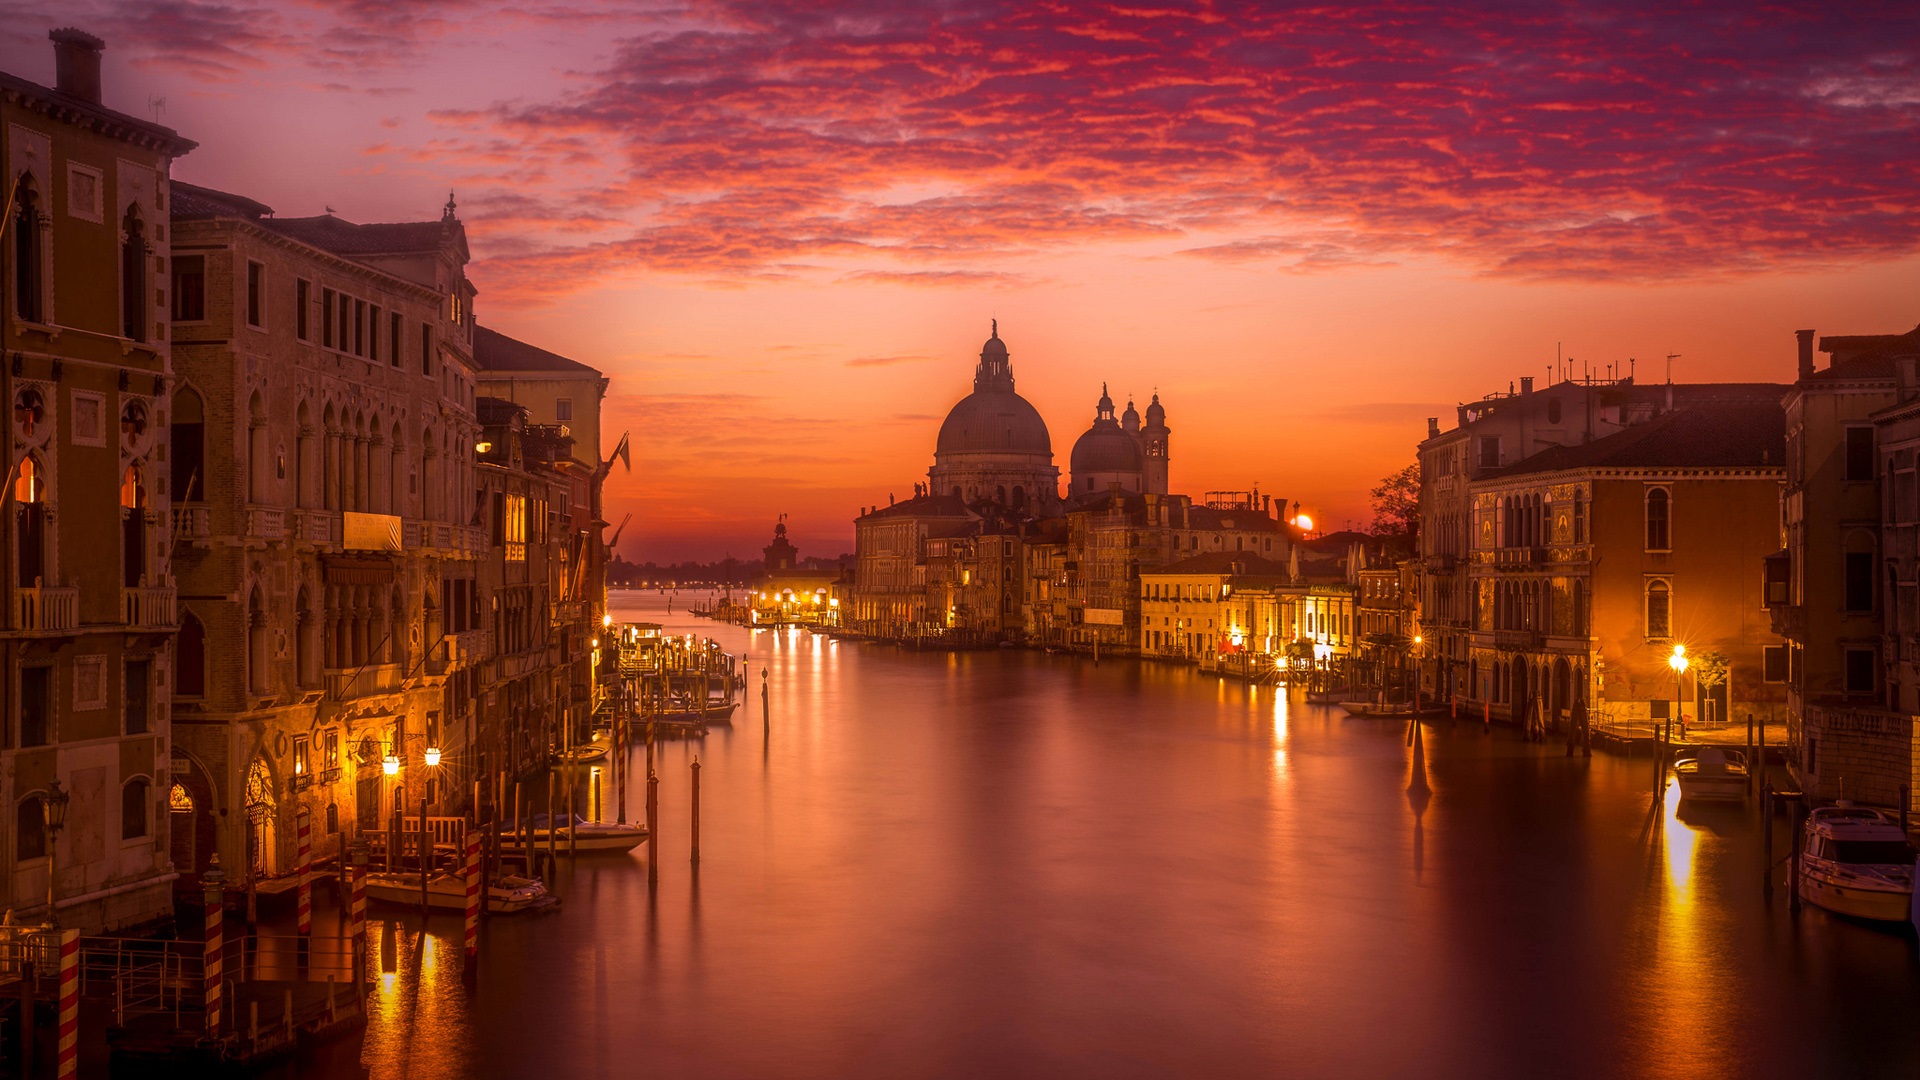 venecia wallpaper,sky,waterway,landmark,evening,city